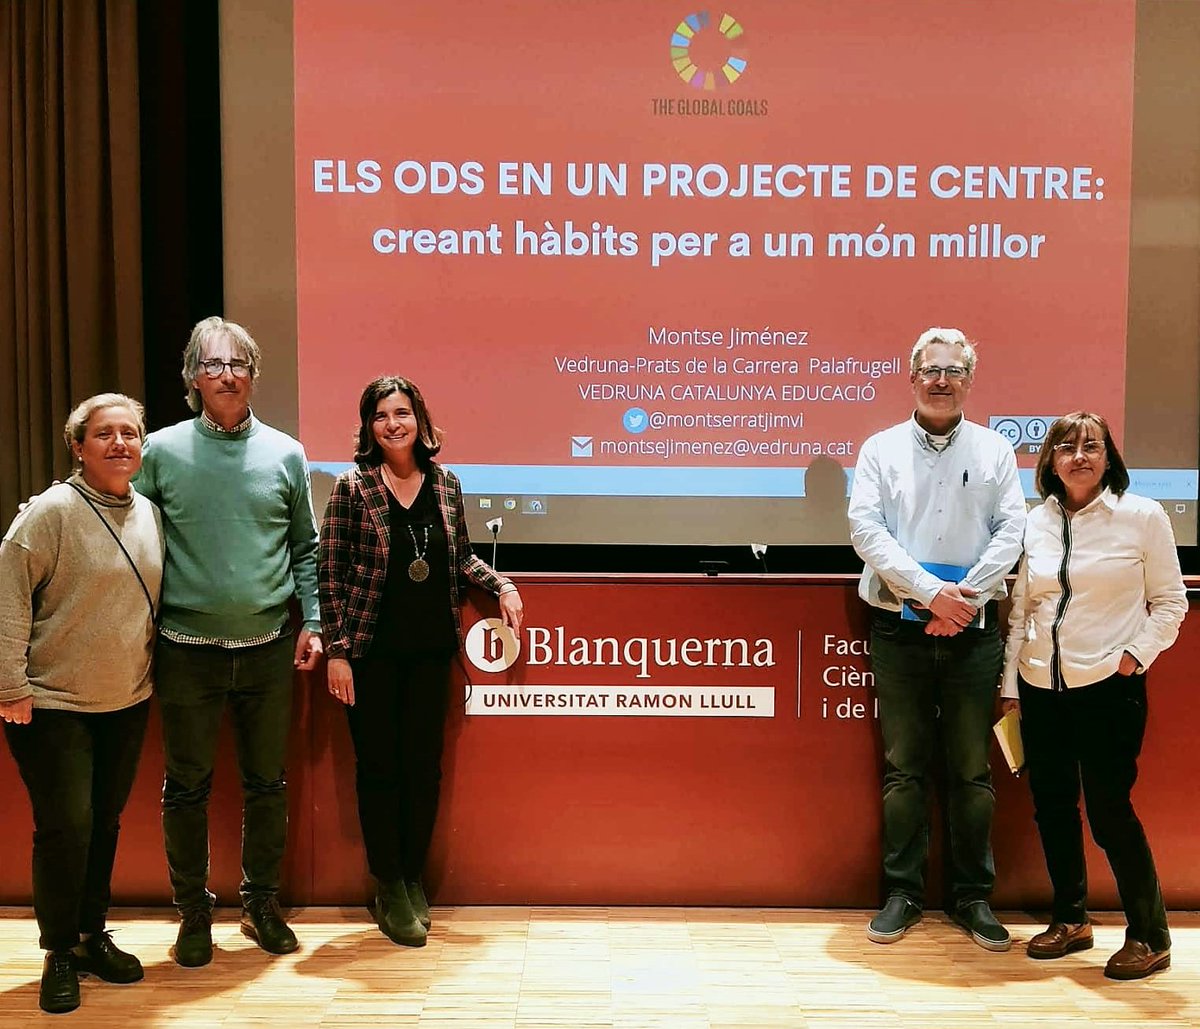 Compartint el nostre Projecte #ODSVedruna amb els estudiants de magisteri de Blanquerna - URL.